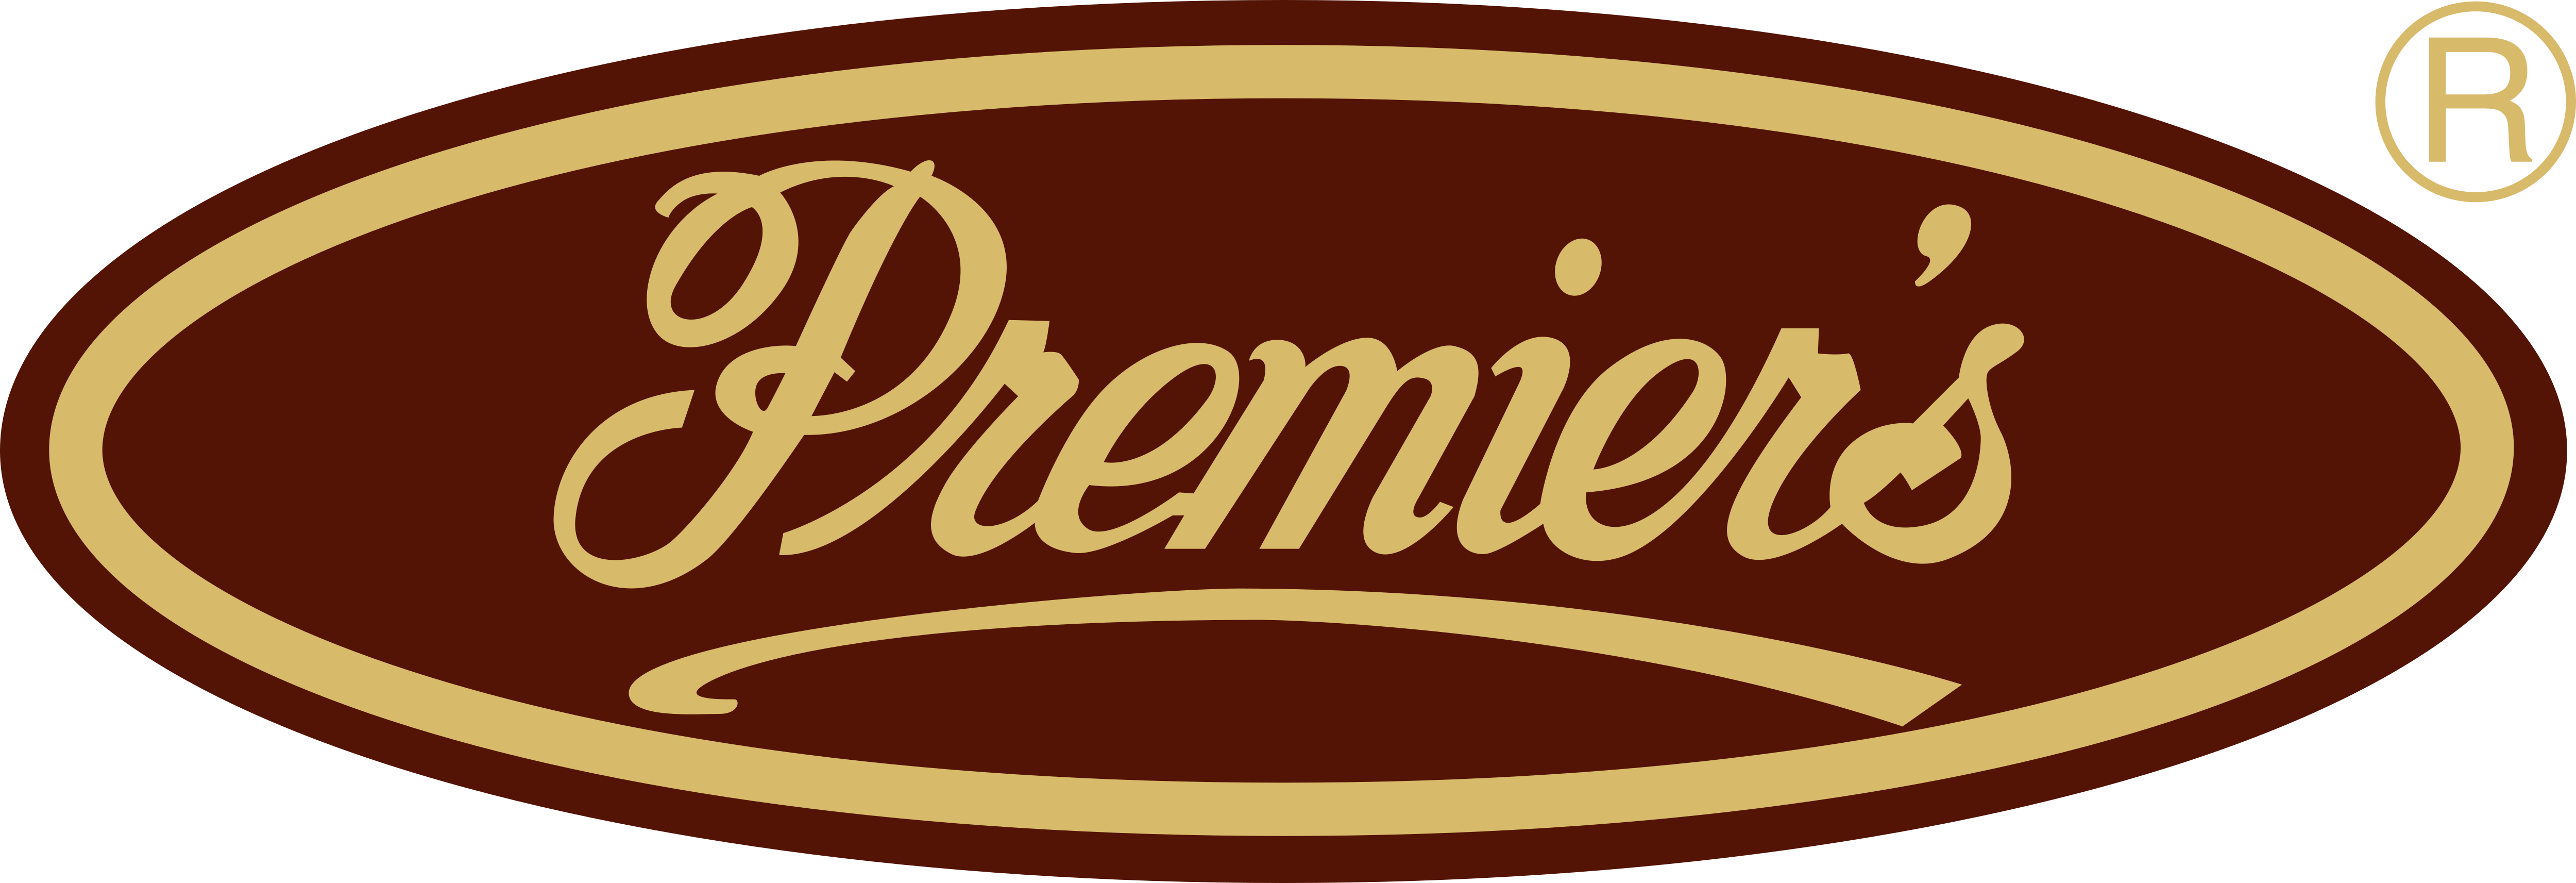 Premier's Tea Limited